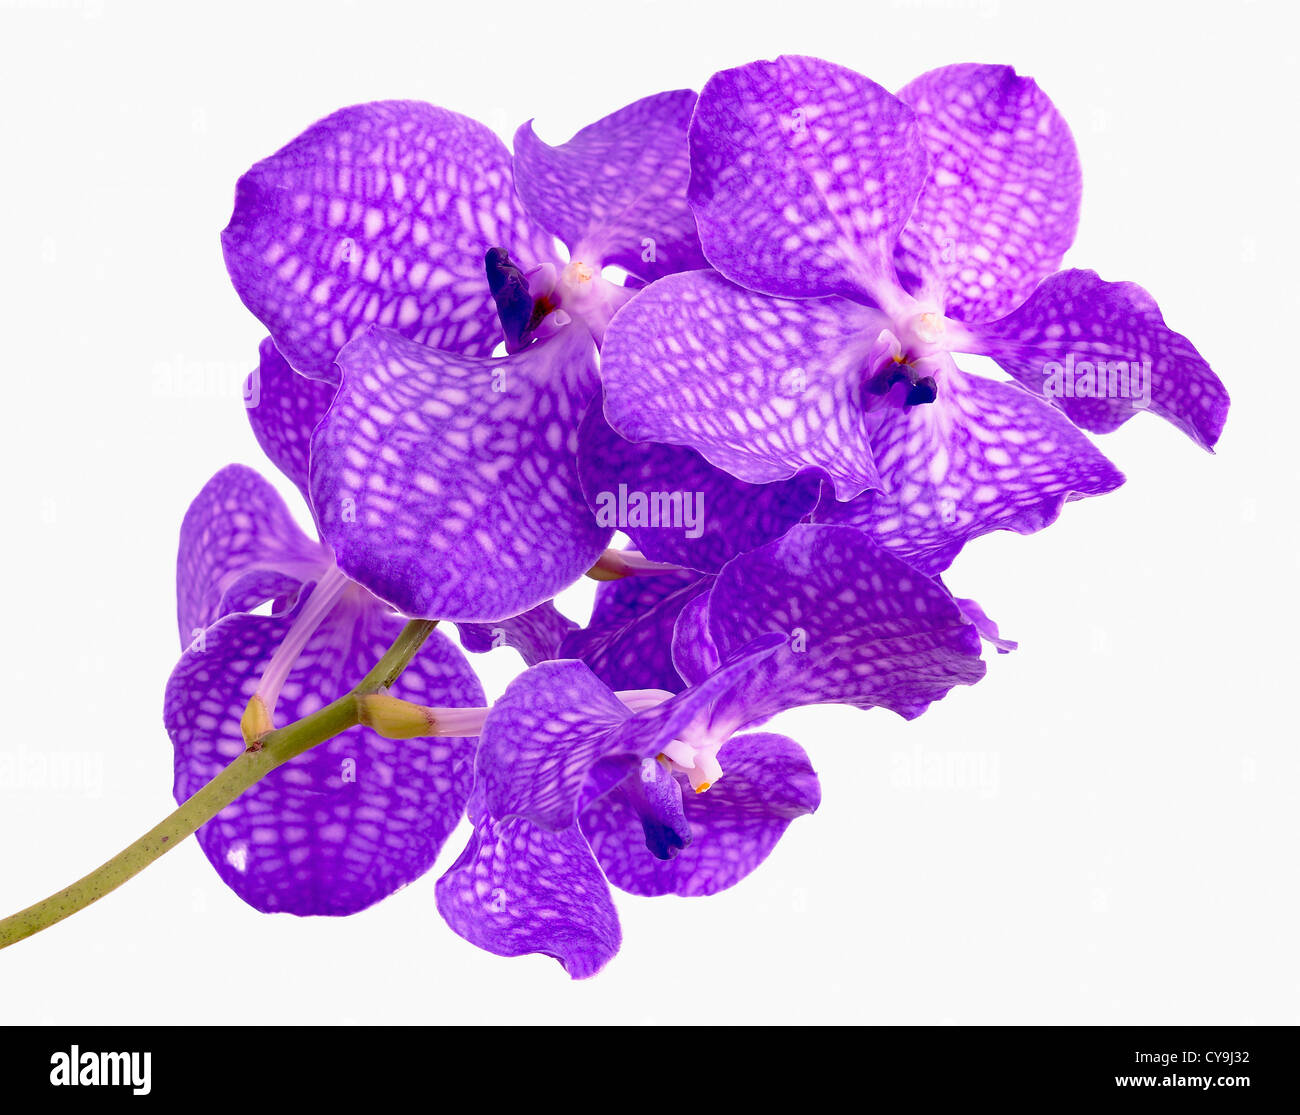 Ascocenda cultivar, l'orchidée Vanda, fleurs violettes contre fond blanc  Photo Stock - Alamy